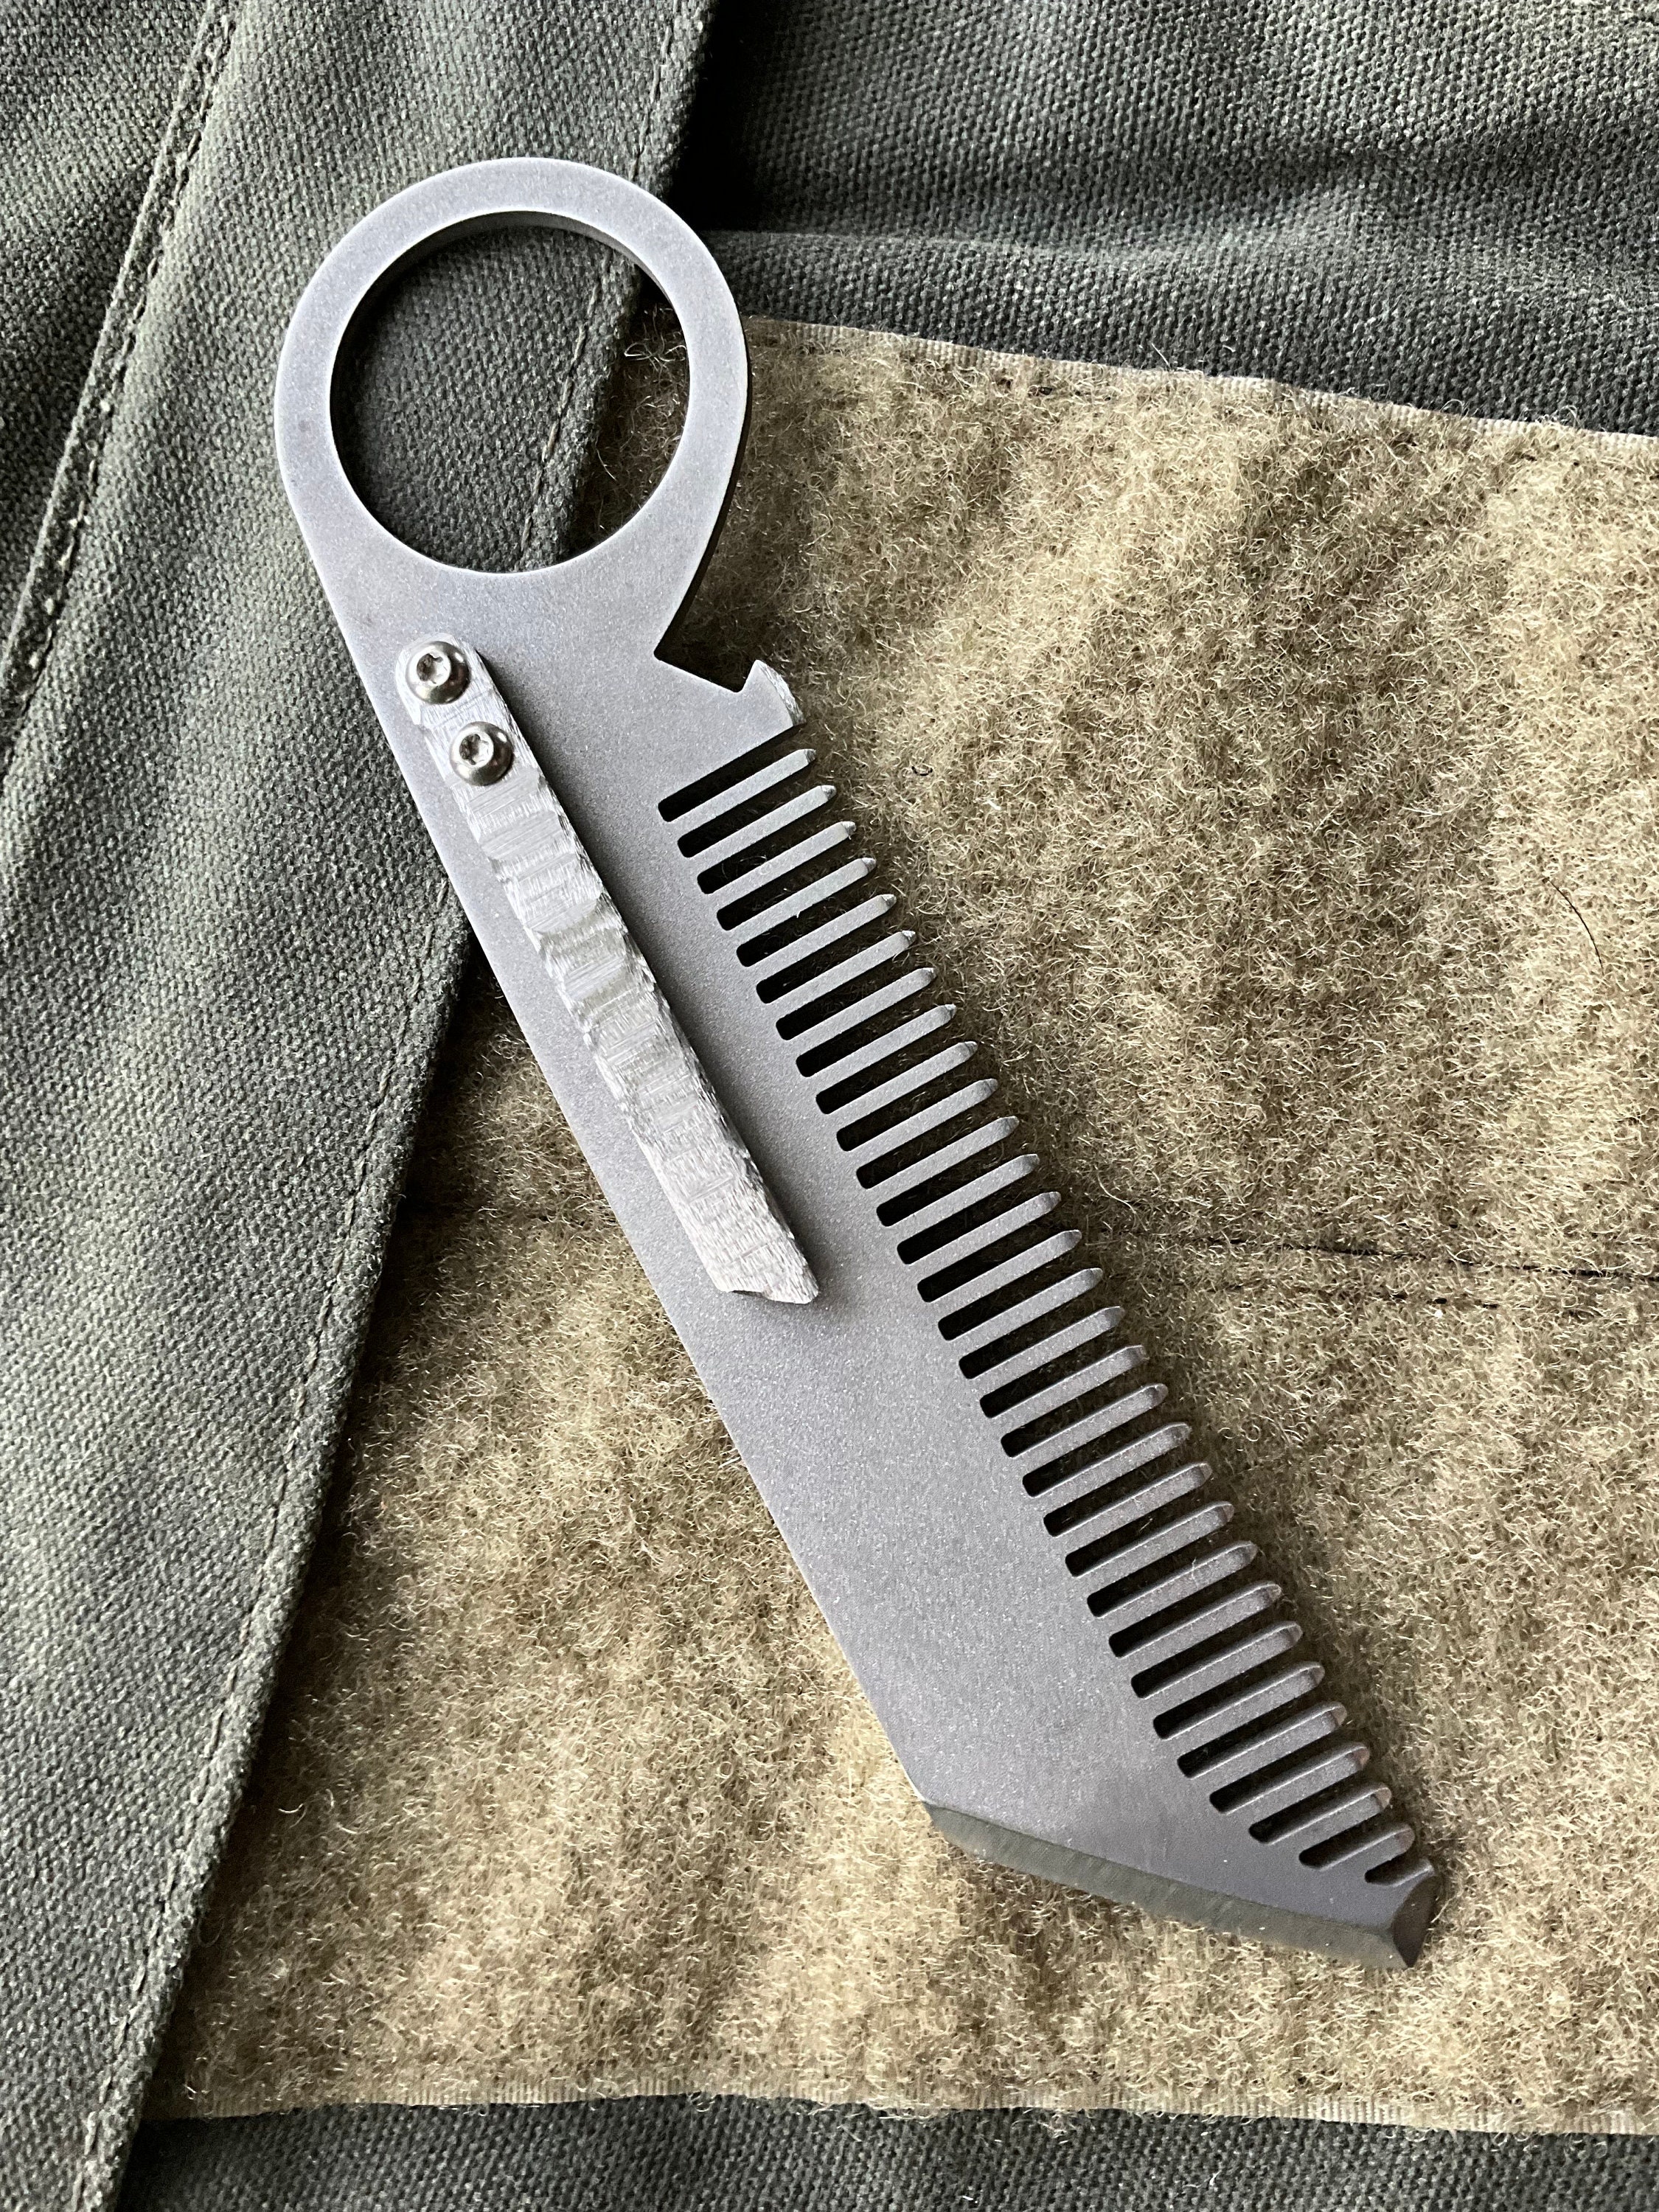 Comb Knife – Pretty Defense